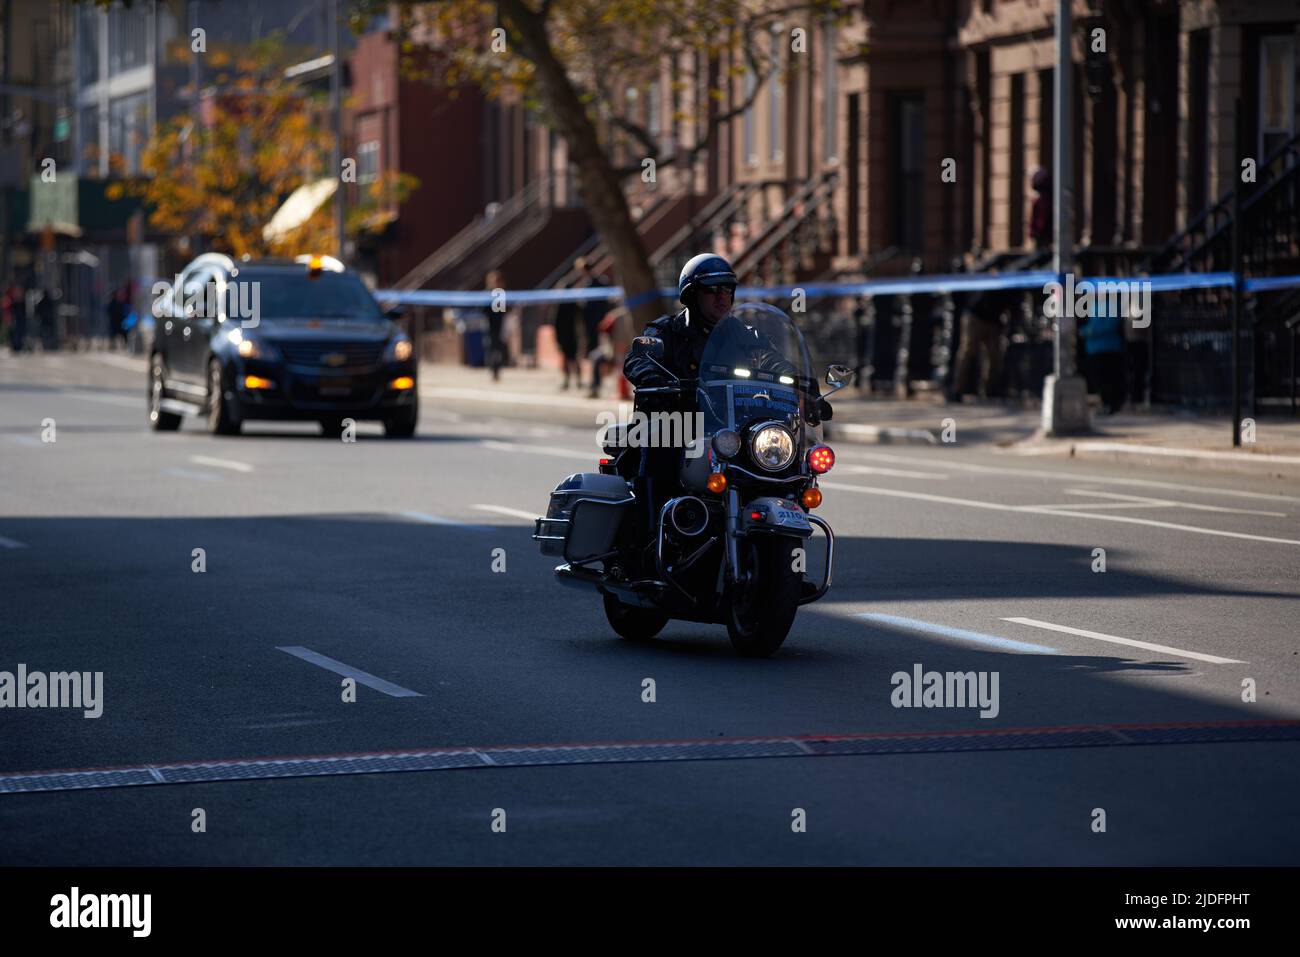 Brooklyn, New York, États-Unis - 3 novembre. 2019: Conduite de moto de police en face de NYC Marathon en train de sécuriser la voie pour les coureurs Banque D'Images